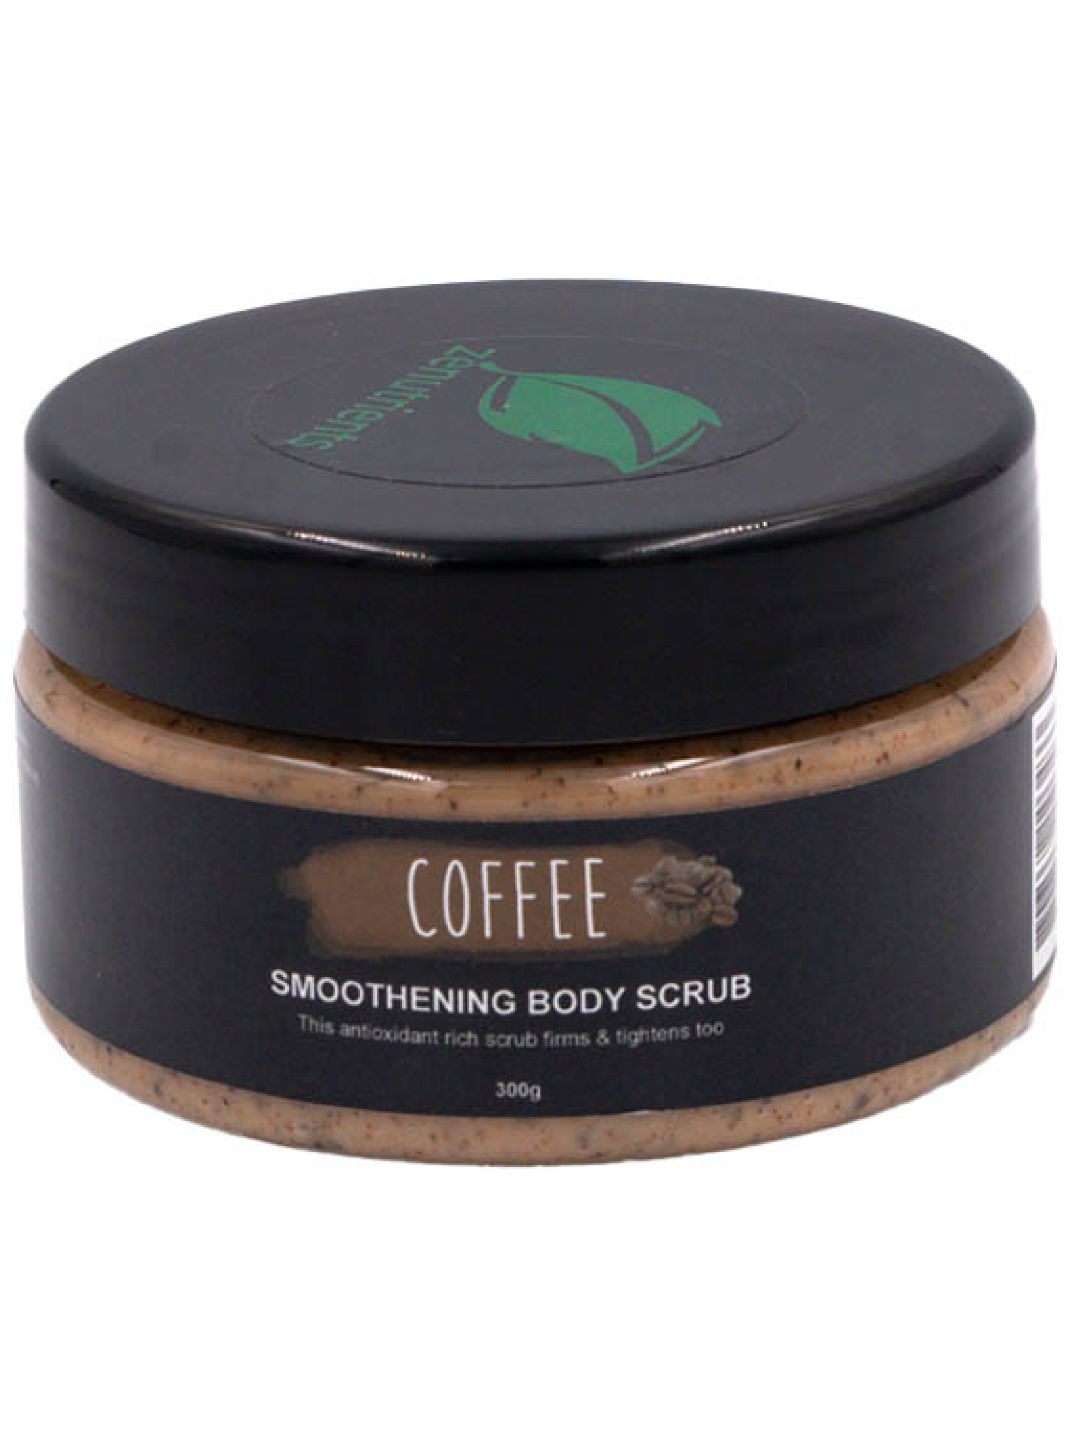 Zenutrients Coffee Smoothening Body Scrub (100g) (No Color- Image 1)